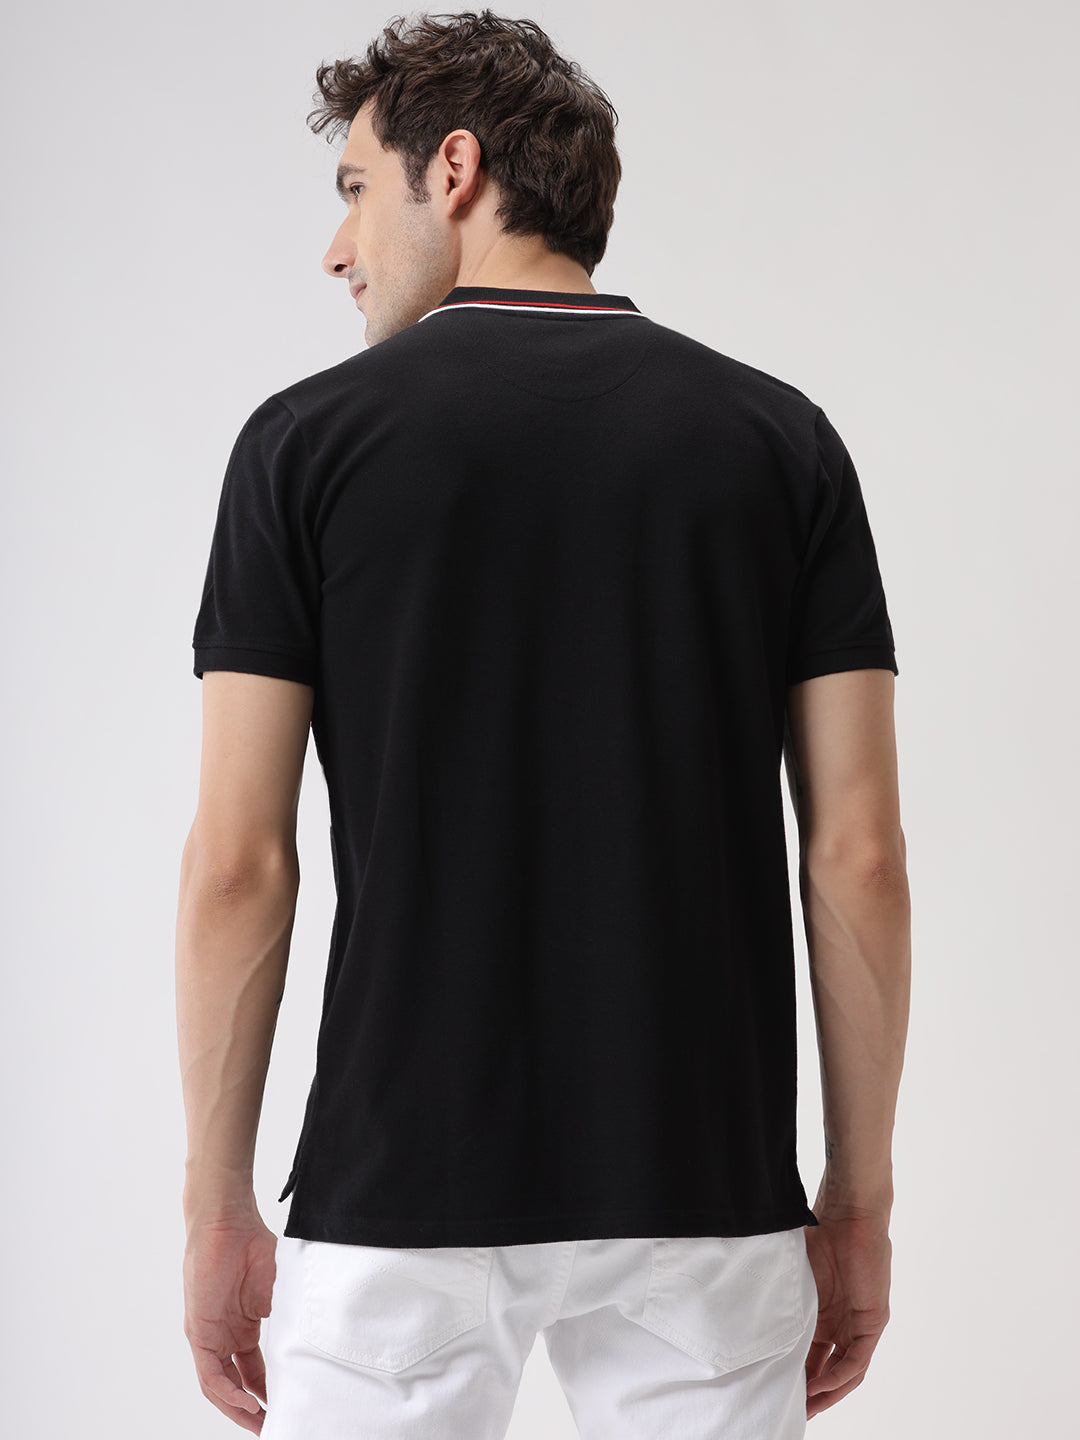 Cut & Sewn Black Polo T-Shirt